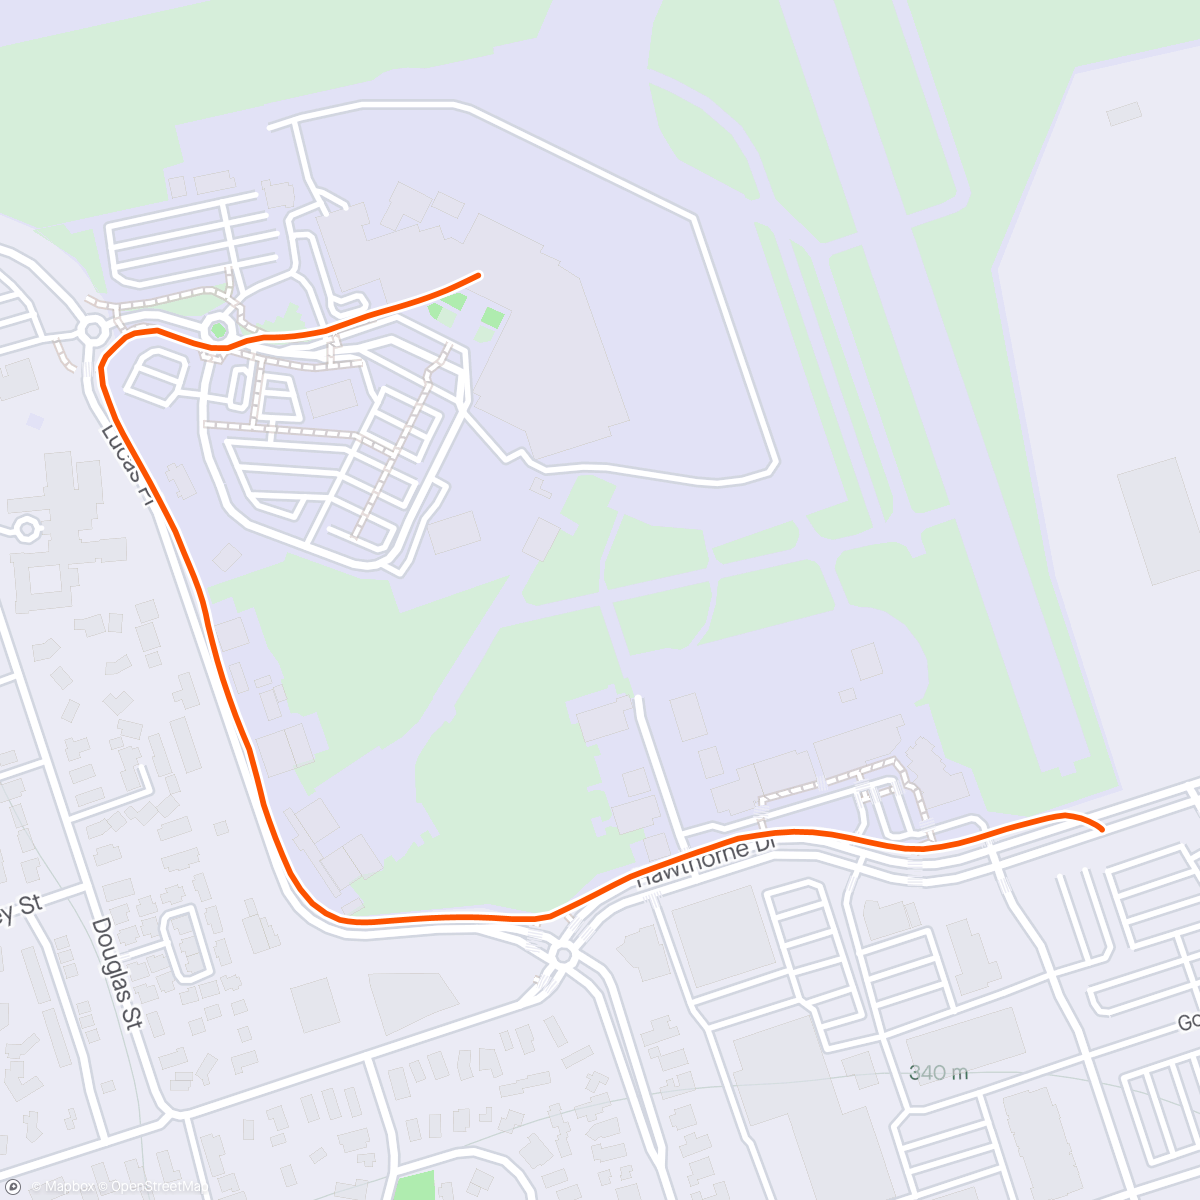 「Morning Walk / jog from carpark」活動的地圖